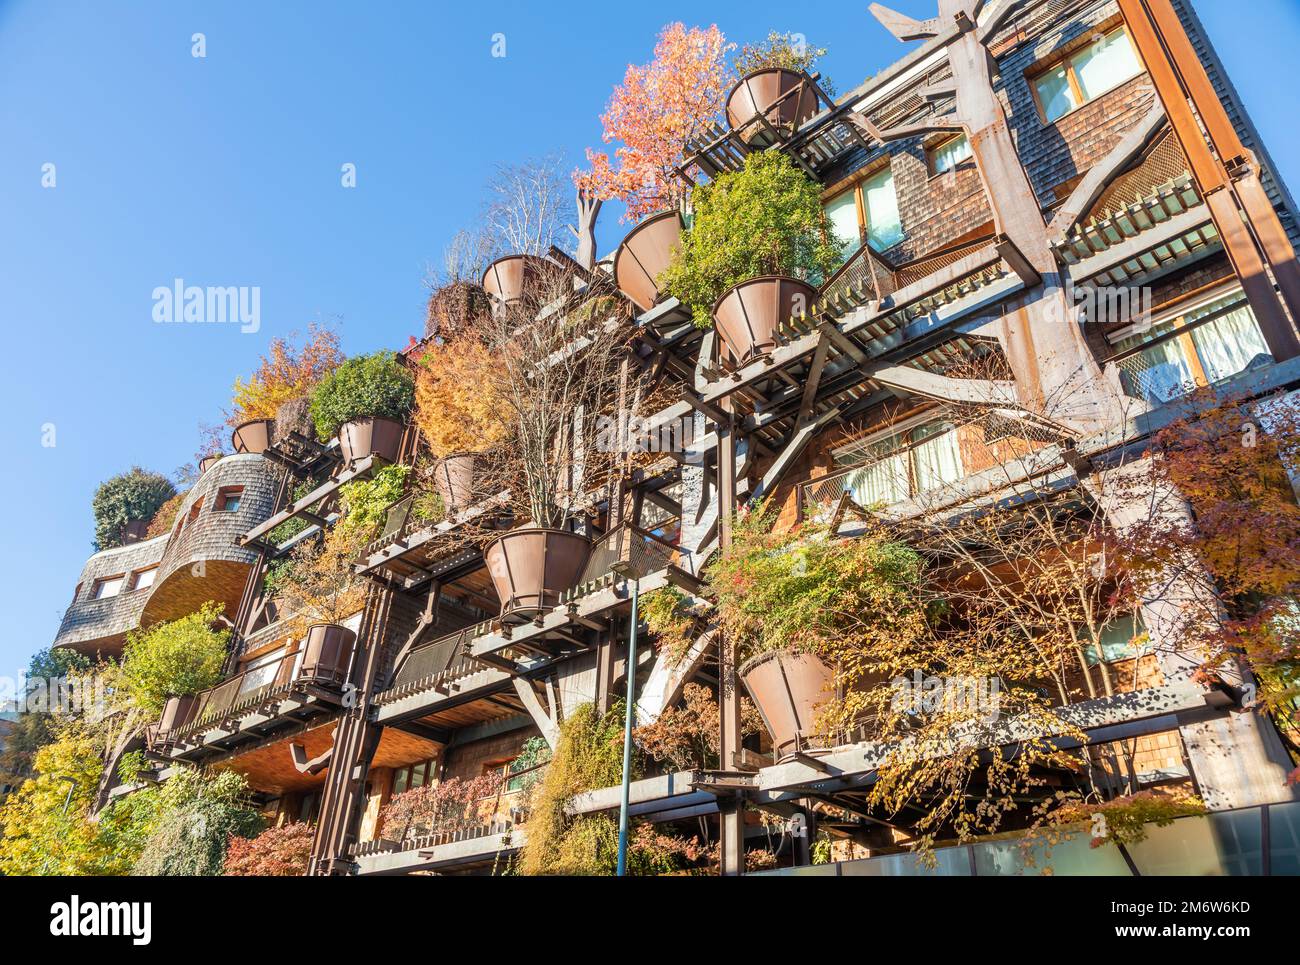 Immobilien grünes Wohngebäude in Turin, Italien. Exterieur mit modernem Design, Pflanzen und Holz integriert. Stockfoto